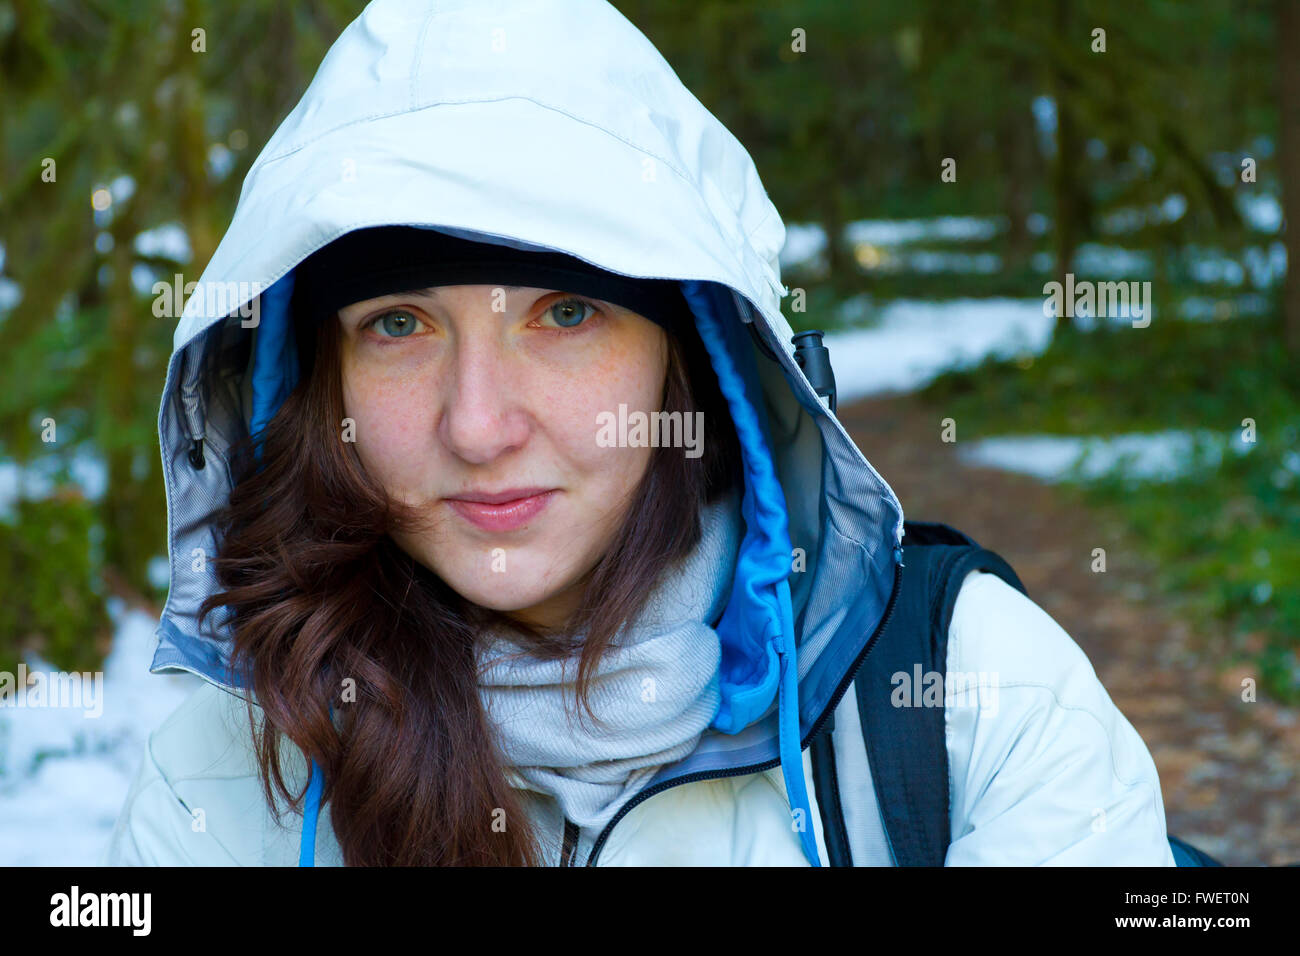 Eine Frau hält während ihrer Wanderung erholen und bis auf die Kamera zu schauen, während Sie trägt eine weiße Jacke. Stockfoto